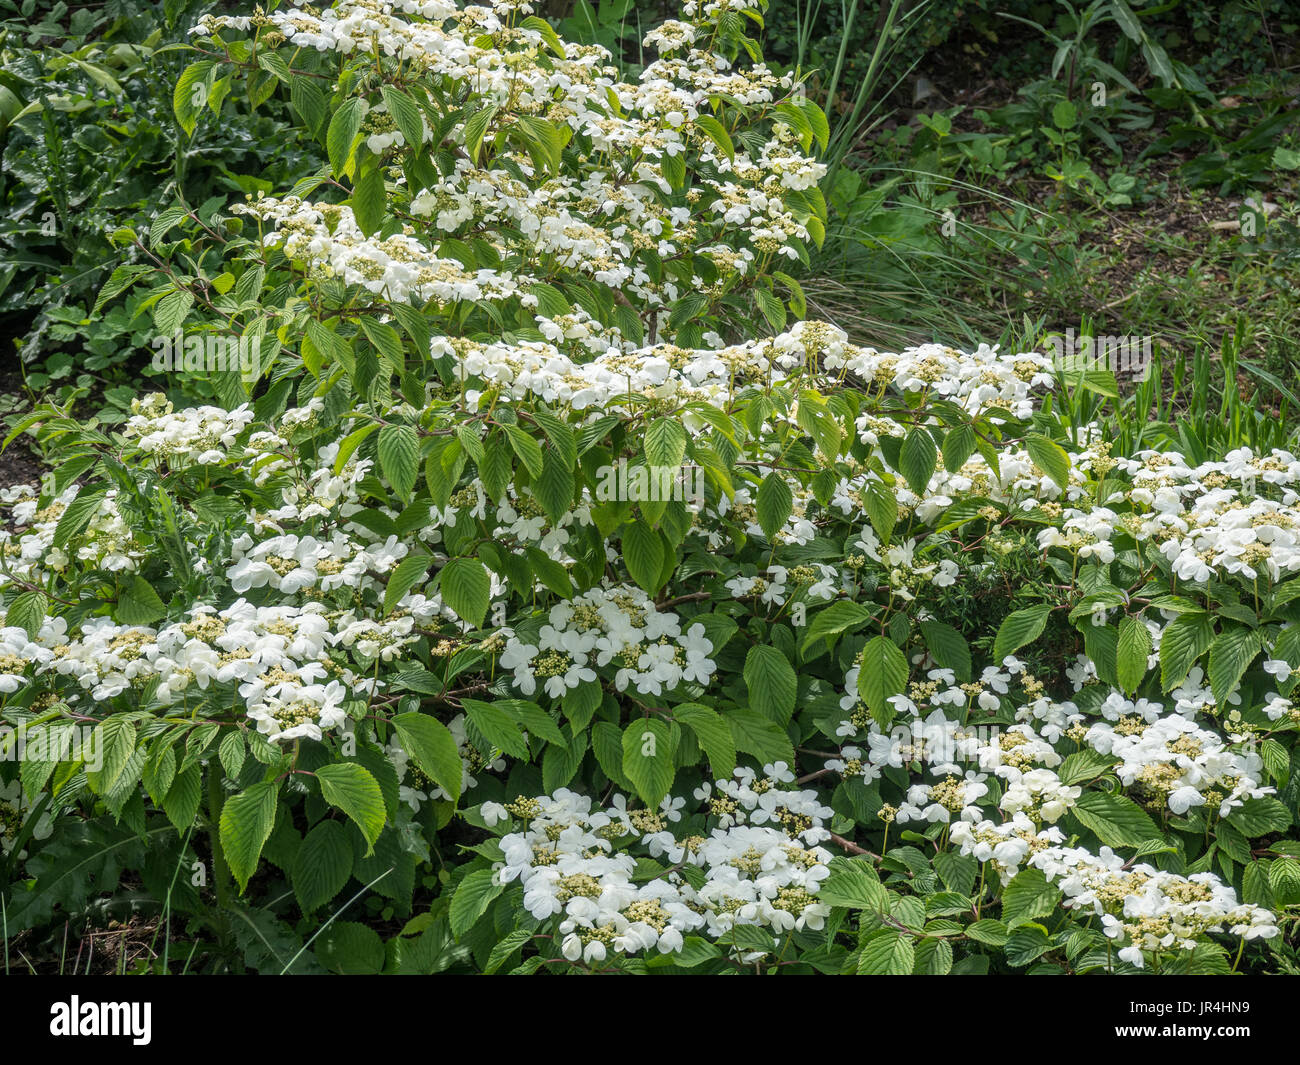 A shrub of Viburnum plicatum 'Mariesii in flower Stock Photo